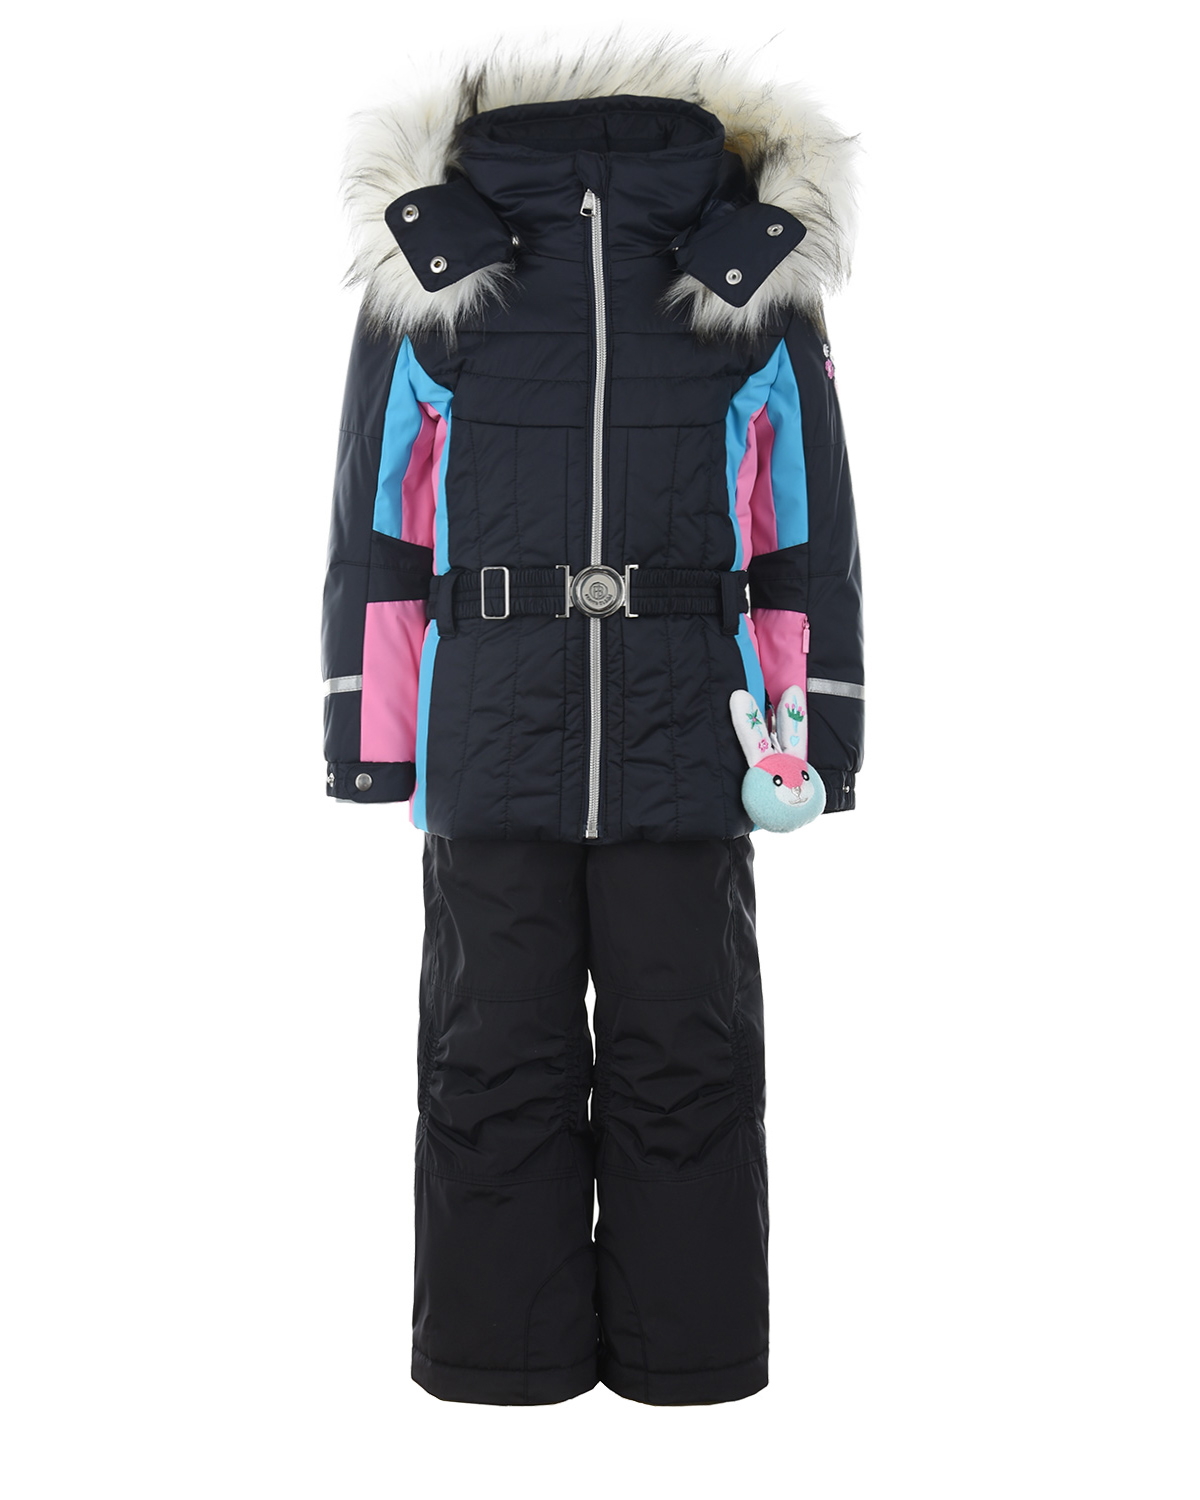 Комплект, куртка и полукомбинезон, синий Poivre Blanc детский